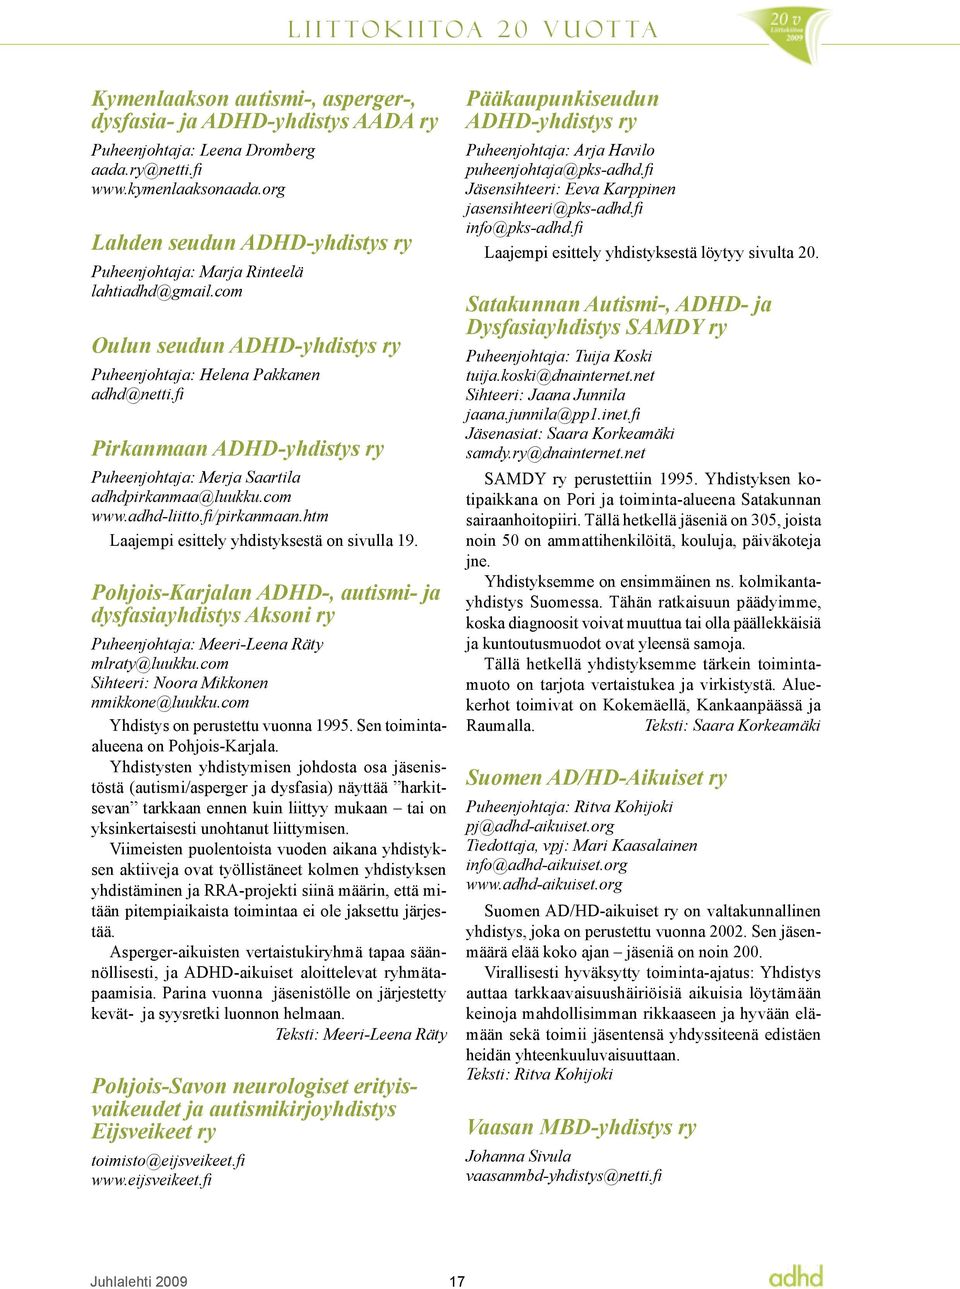 fi Pirkanmaan ADHD-yhdistys ry Puheenjohtaja: Merja Saartila adhdpirkanmaa@luukku.com www.adhd-liitto.fi/pirkanmaan.htm Laajempi esittely yhdistyksestä on sivulla 19.